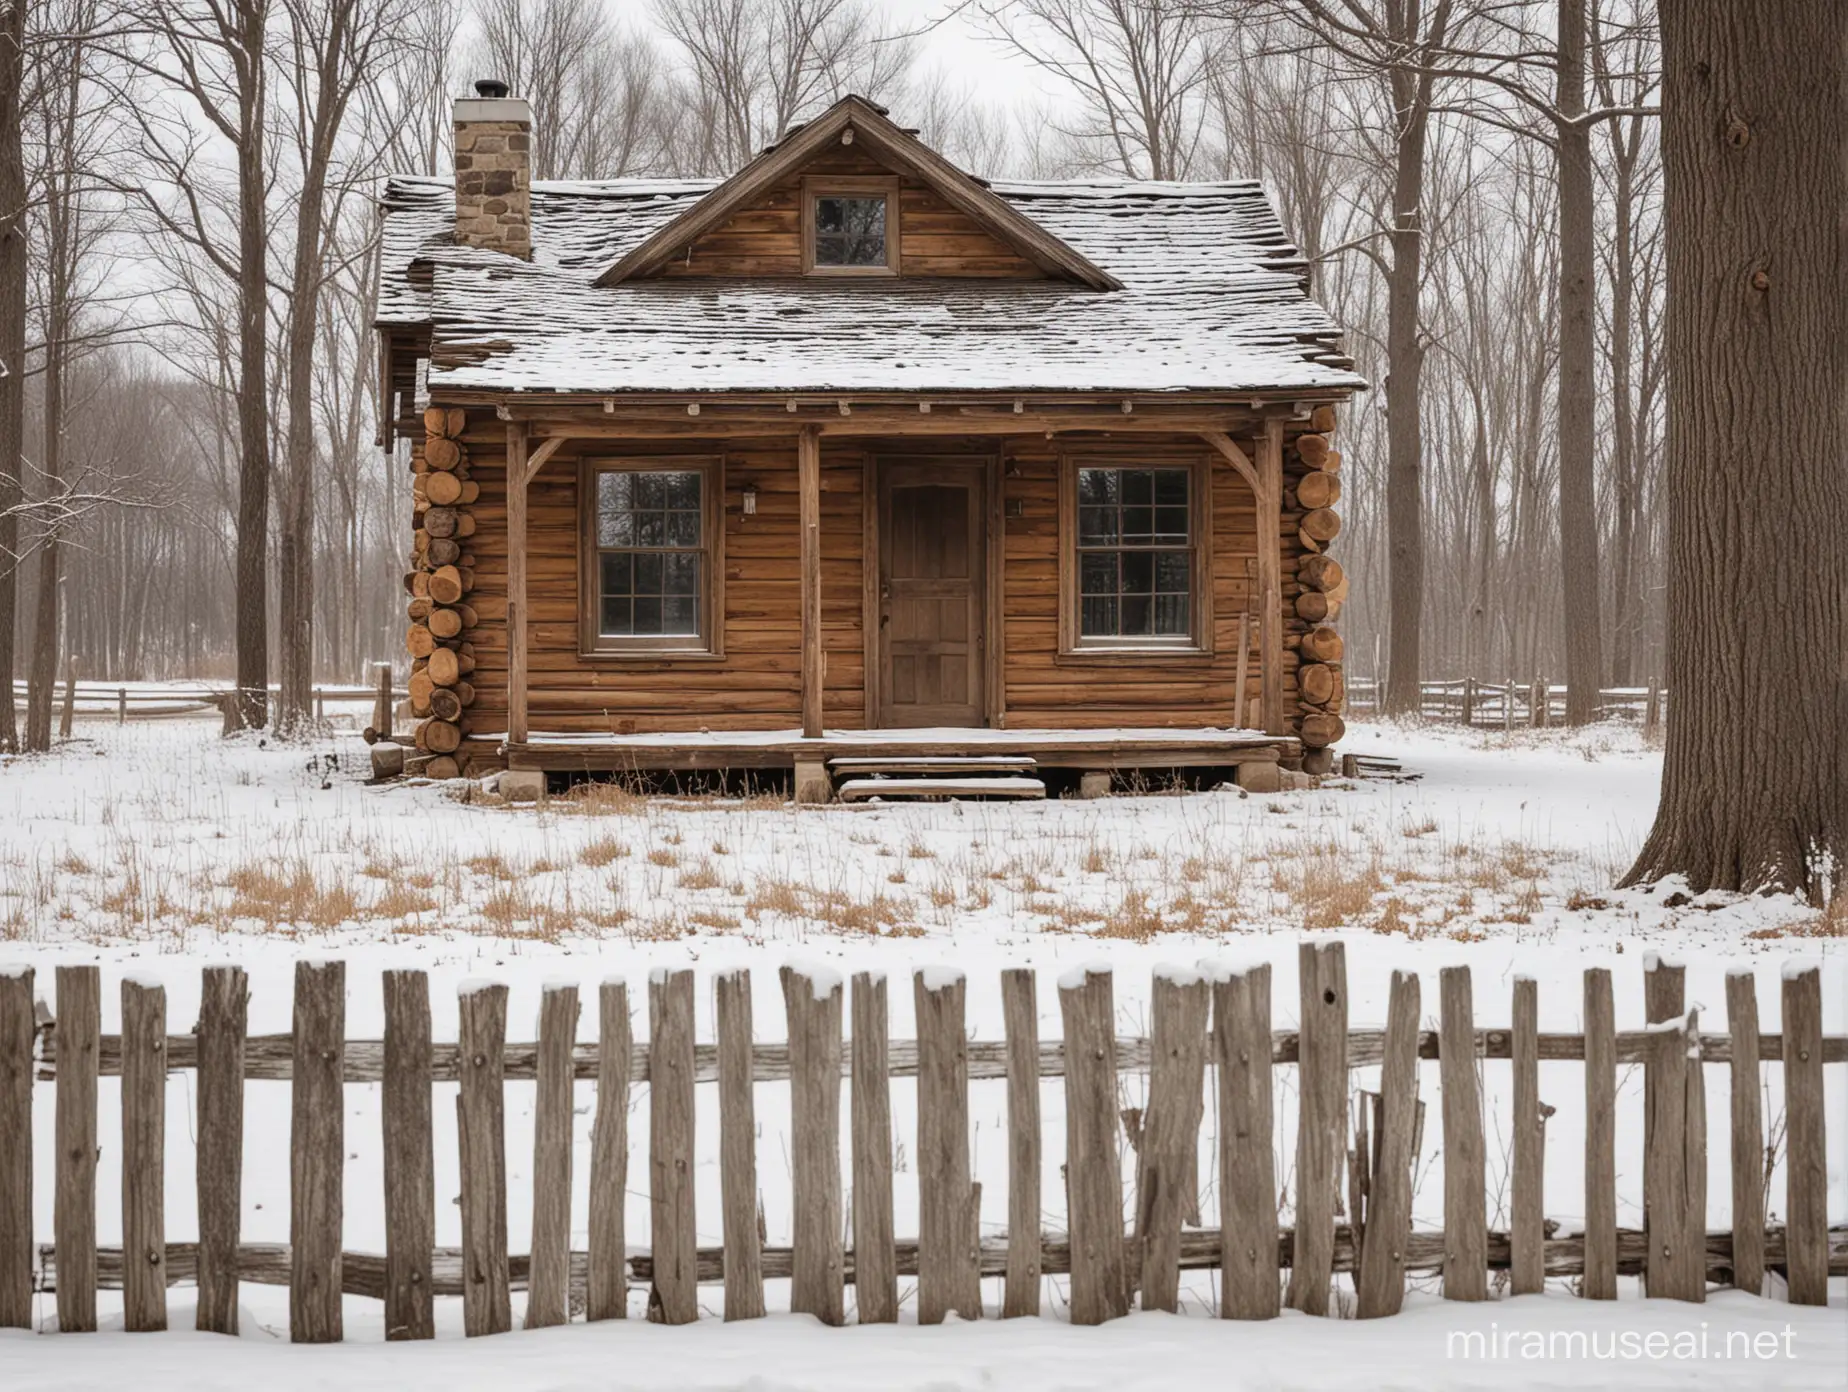 Difoto dari depan sebuah log cabin pedesaan yang sederhana dan tua namun indah pada musim dingin. Halaman cabin yang indah dengan pagar tua.